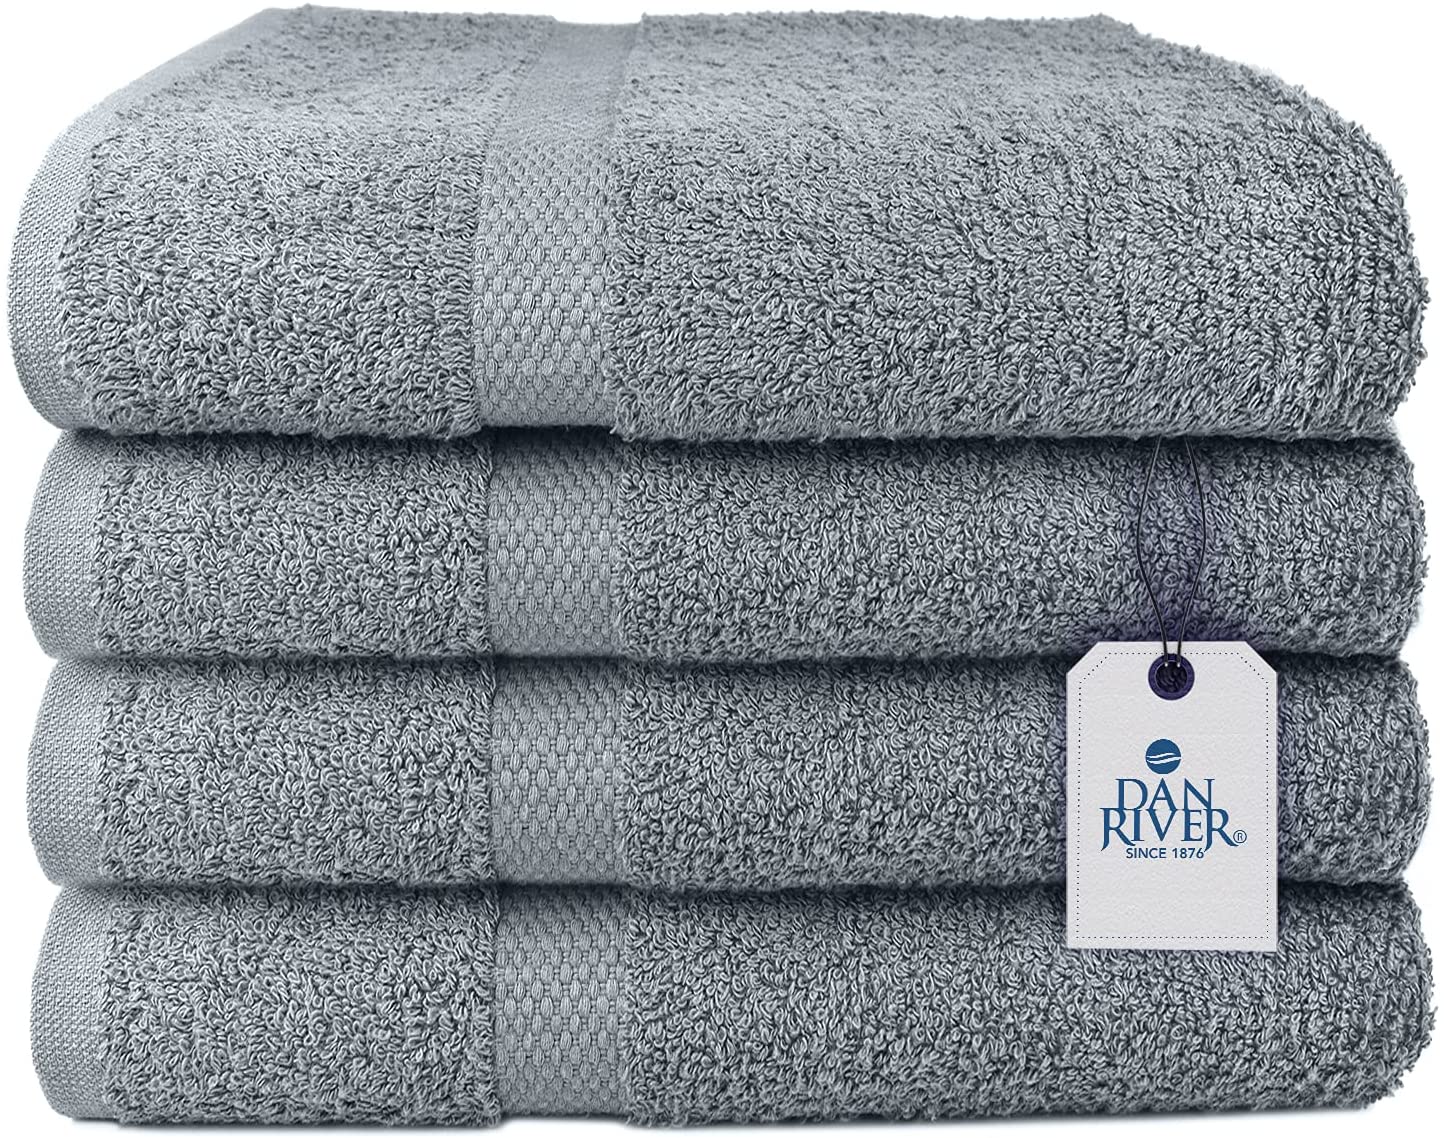 DAN RIVER 100% Cotton Terry Bath Towel Set, 4-Pack